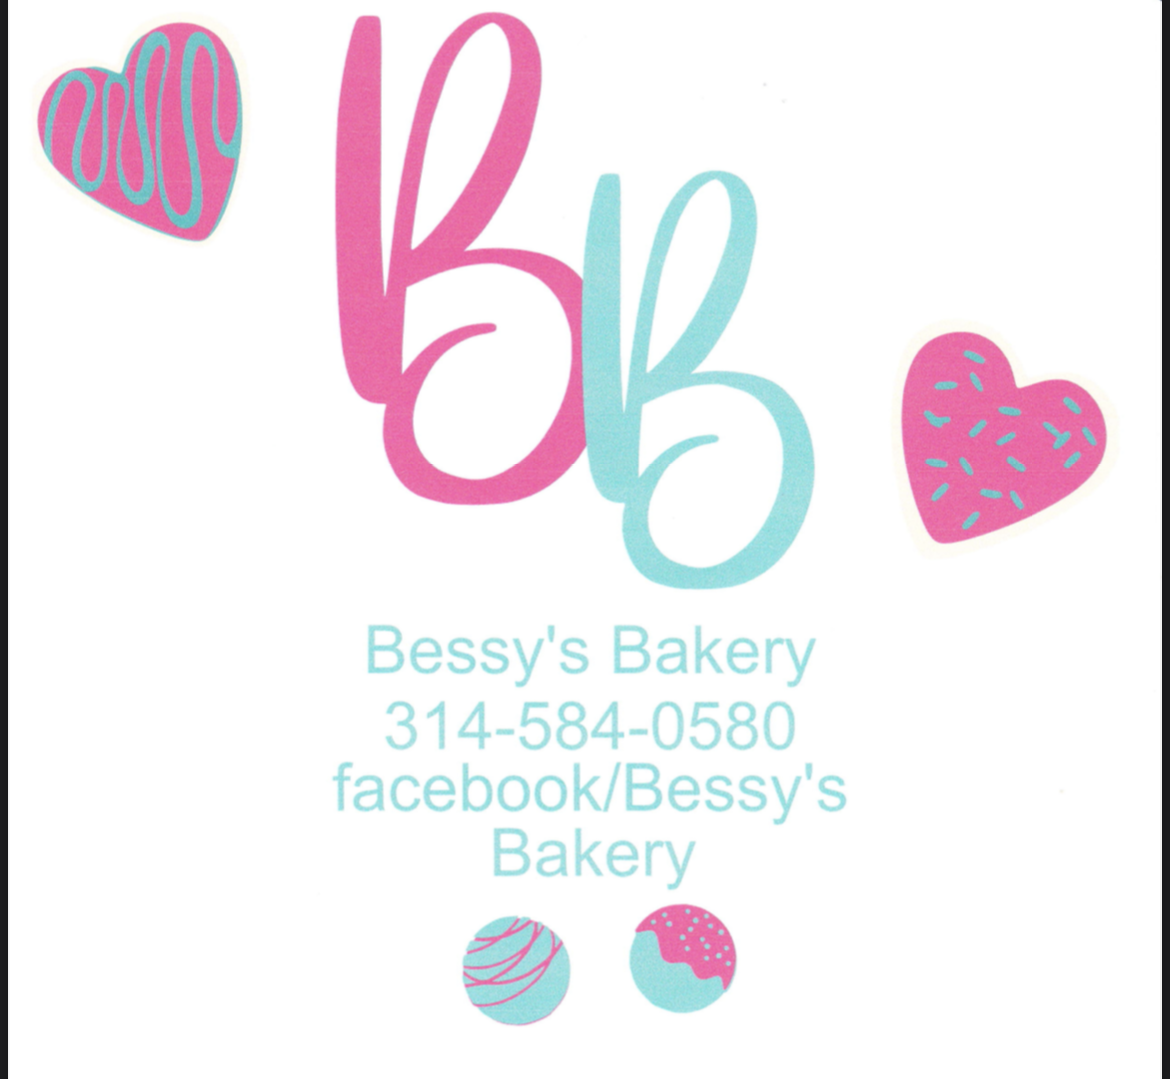 Bessie Bakery